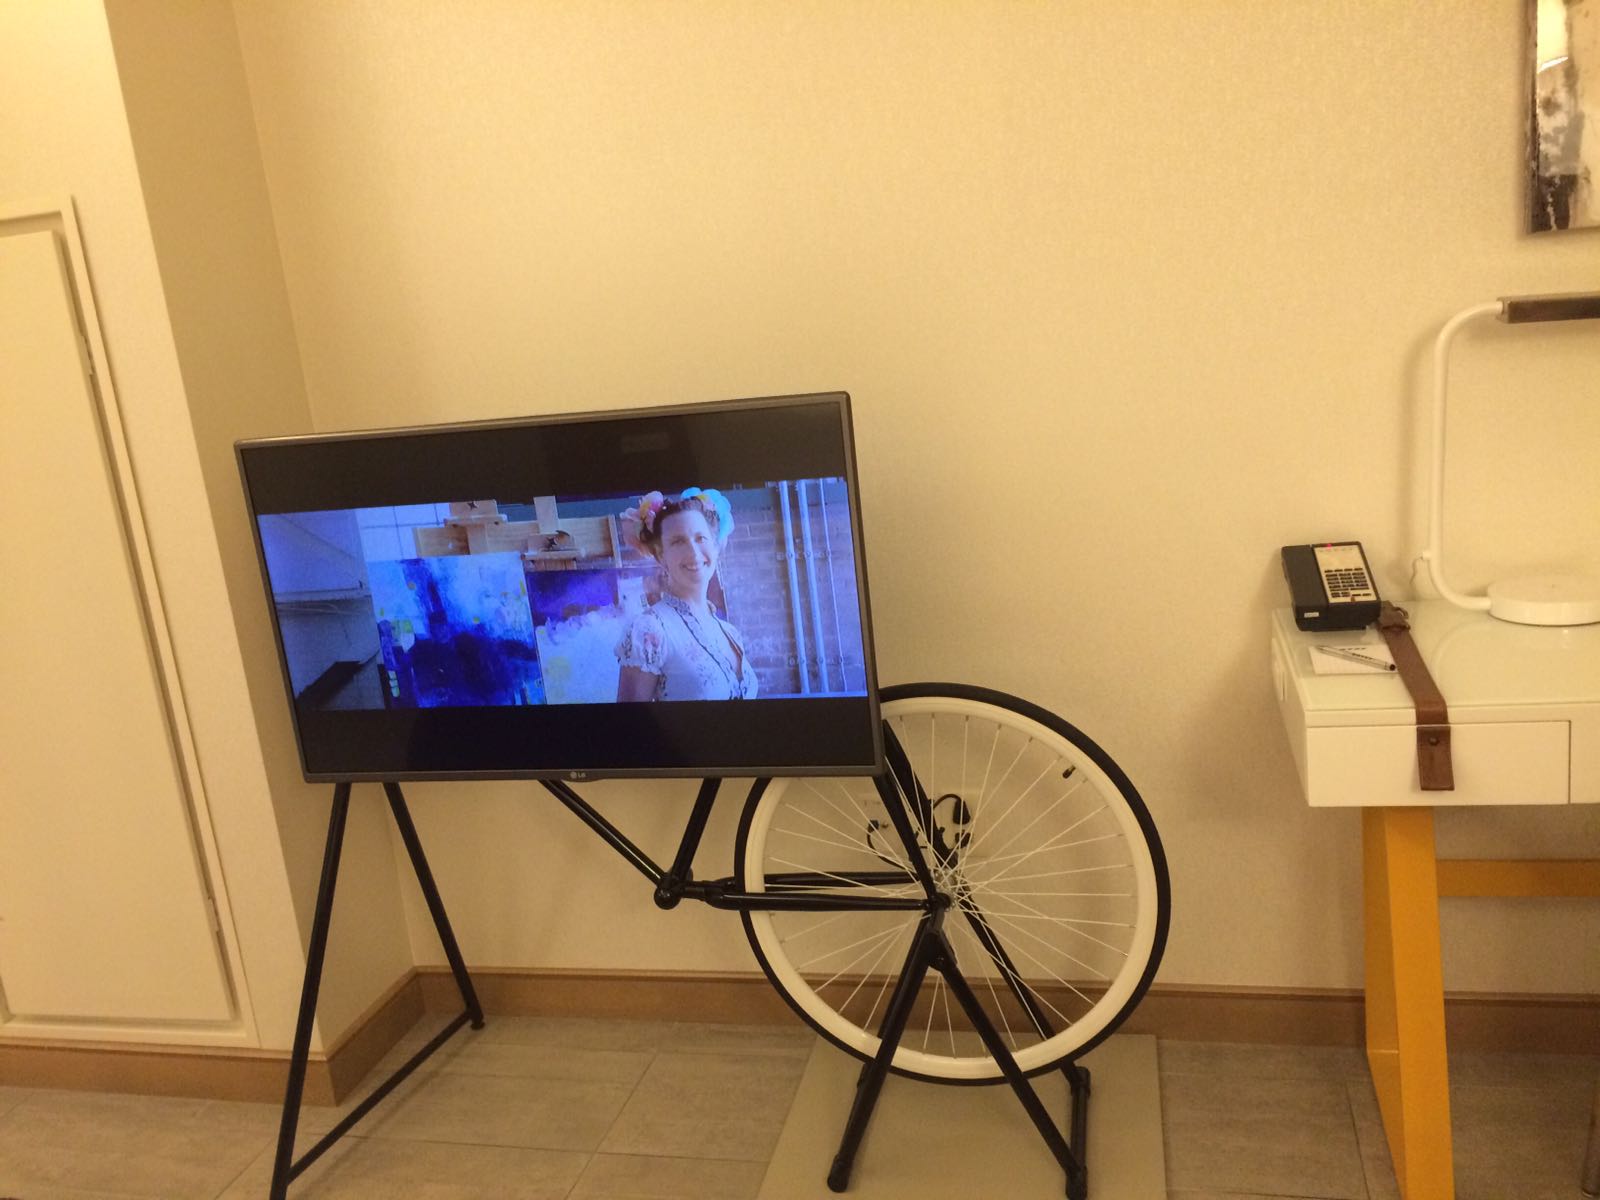 Editorin Hannah testet das Envoy Hotel in Bosten. Hier der stylische Fahrrad-Designer-Fernseher.